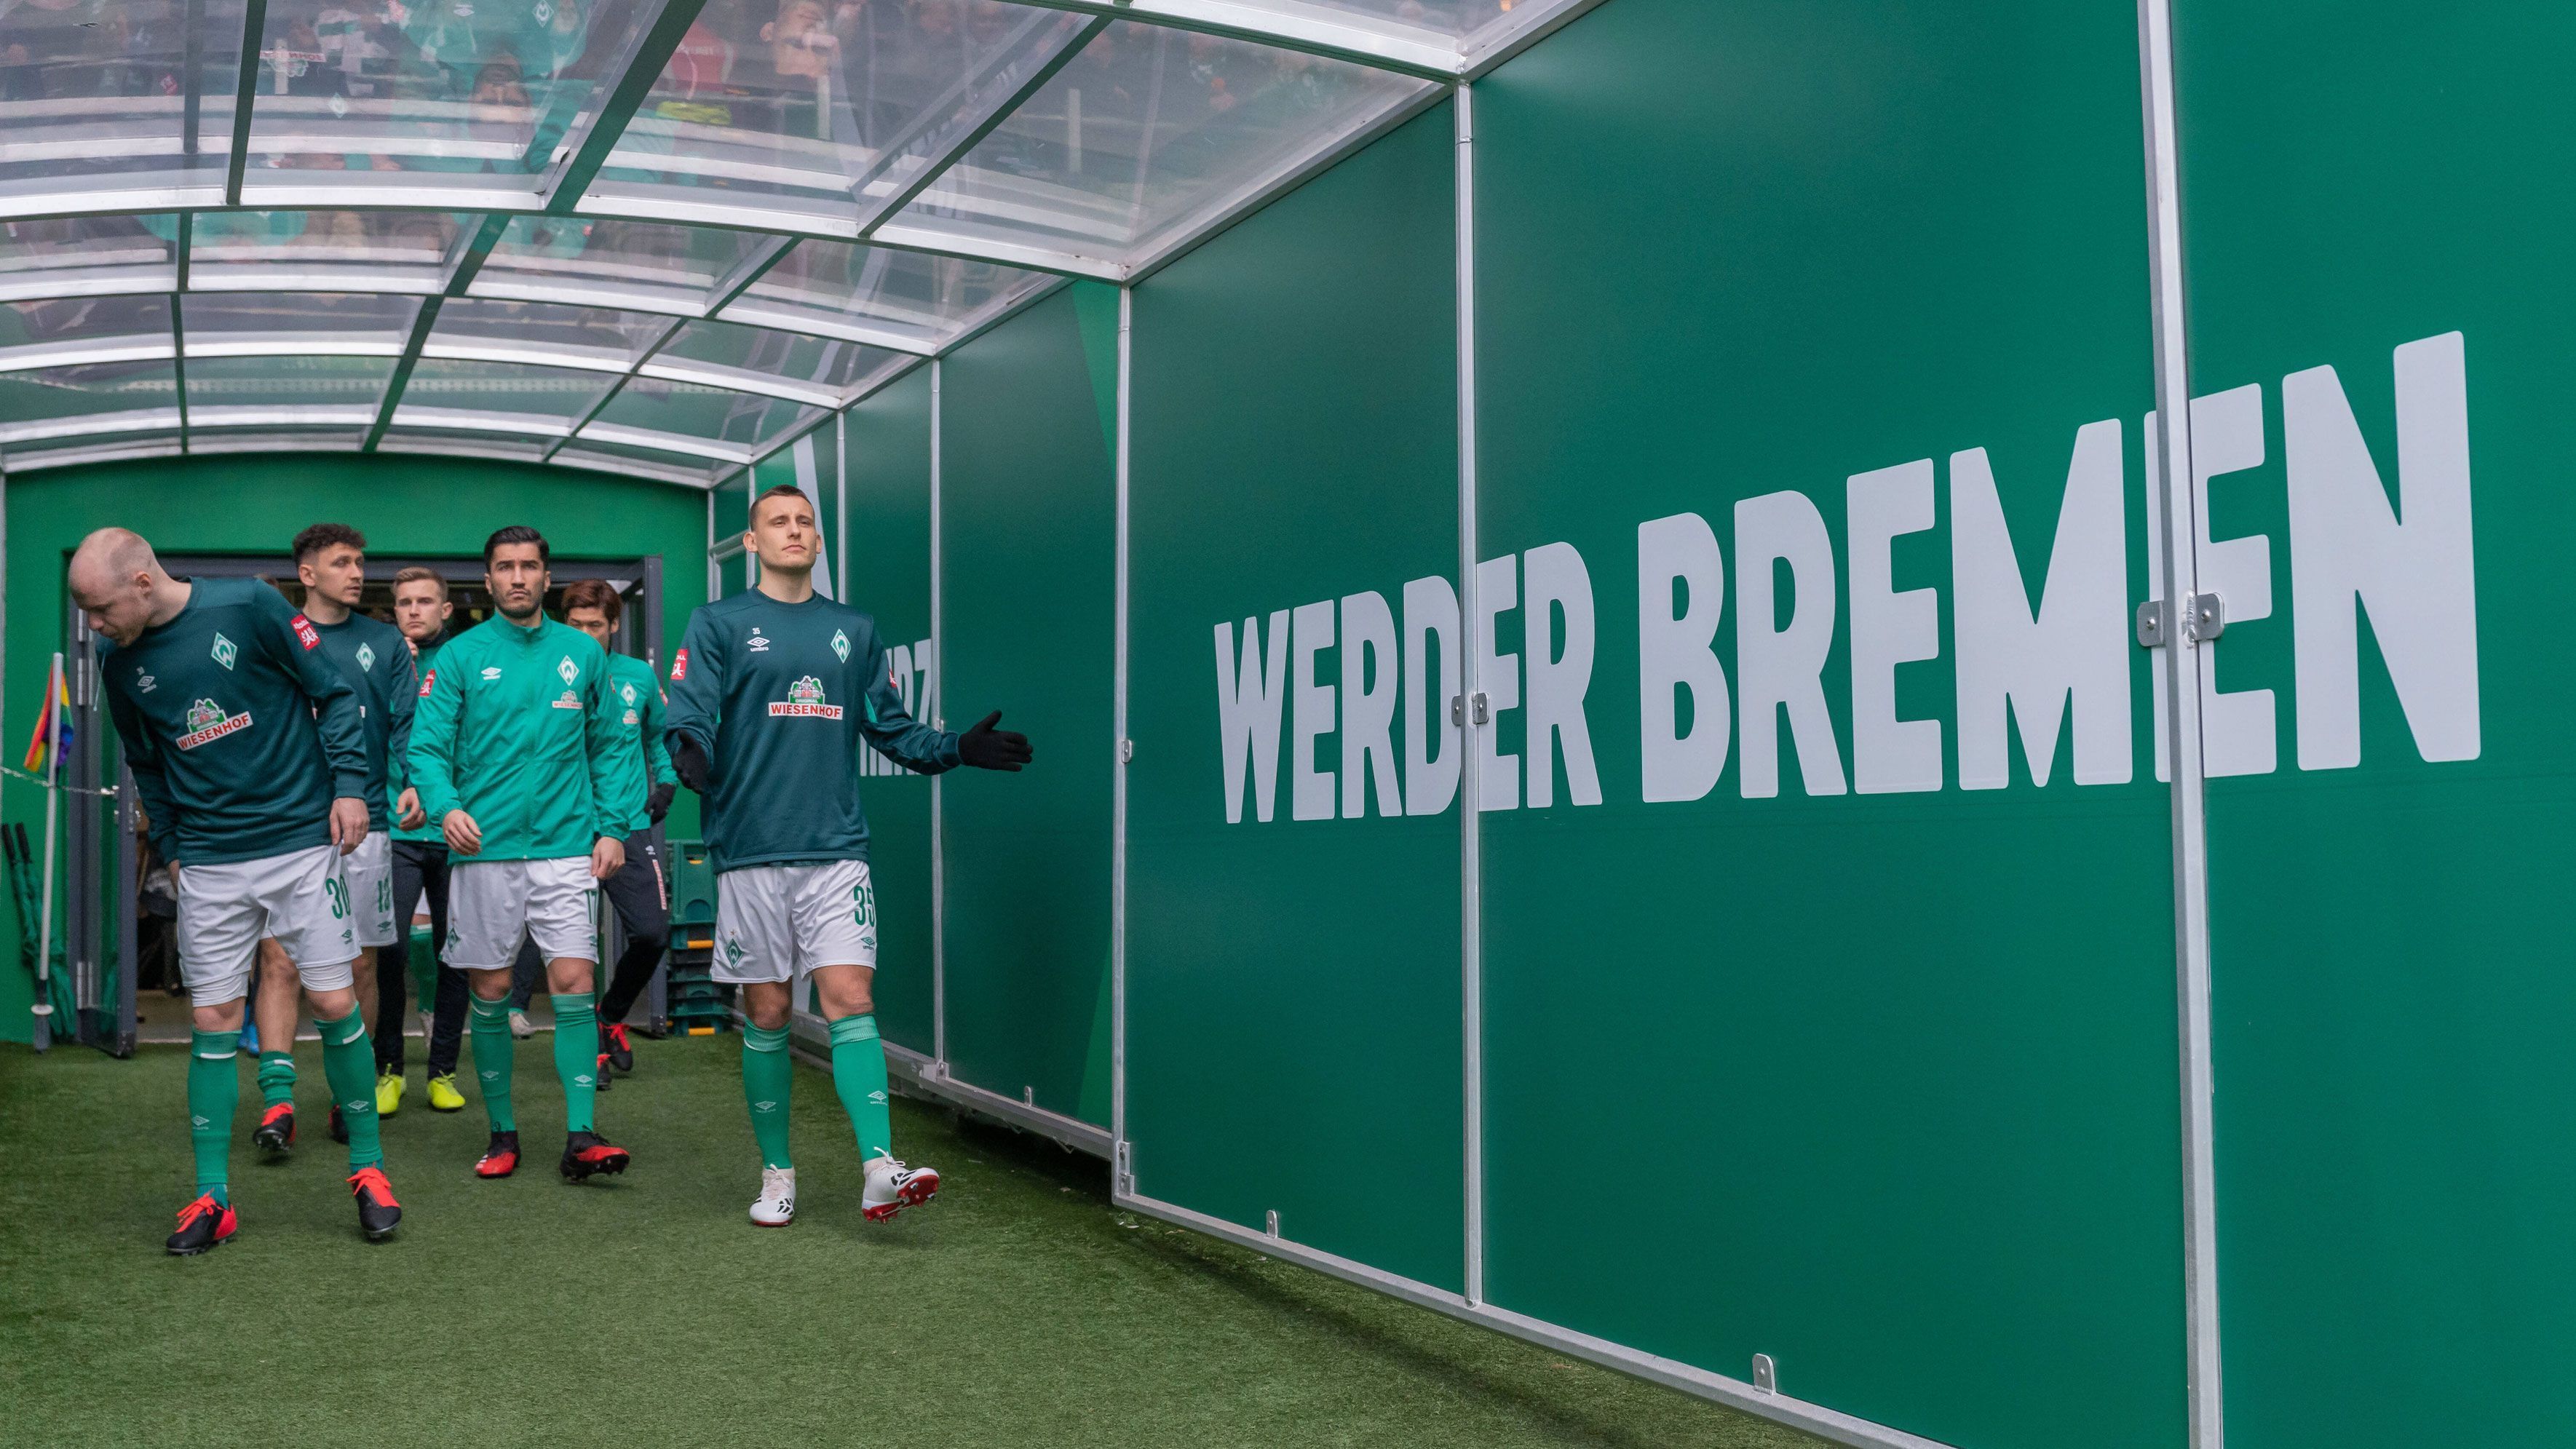 
                <strong>Platz 10 (geteilt): SV Werder Bremen</strong><br>
                Gesamtpunktzahl: 33,5 -Facebook: 9 Punkte, Instagram: 9 Punkte, YouTube: 8 Punkte, Twitter: 7,5 Punkte -Die Bremer sind nicht nur abgestiegen in dieser Saison, sie haben auch ihr Social-Media-Game ganz schön schleifen lassen. Ganze elf Punkte weniger als 19/20 bedeuten nur noch Platz 10 an der Weser.
              